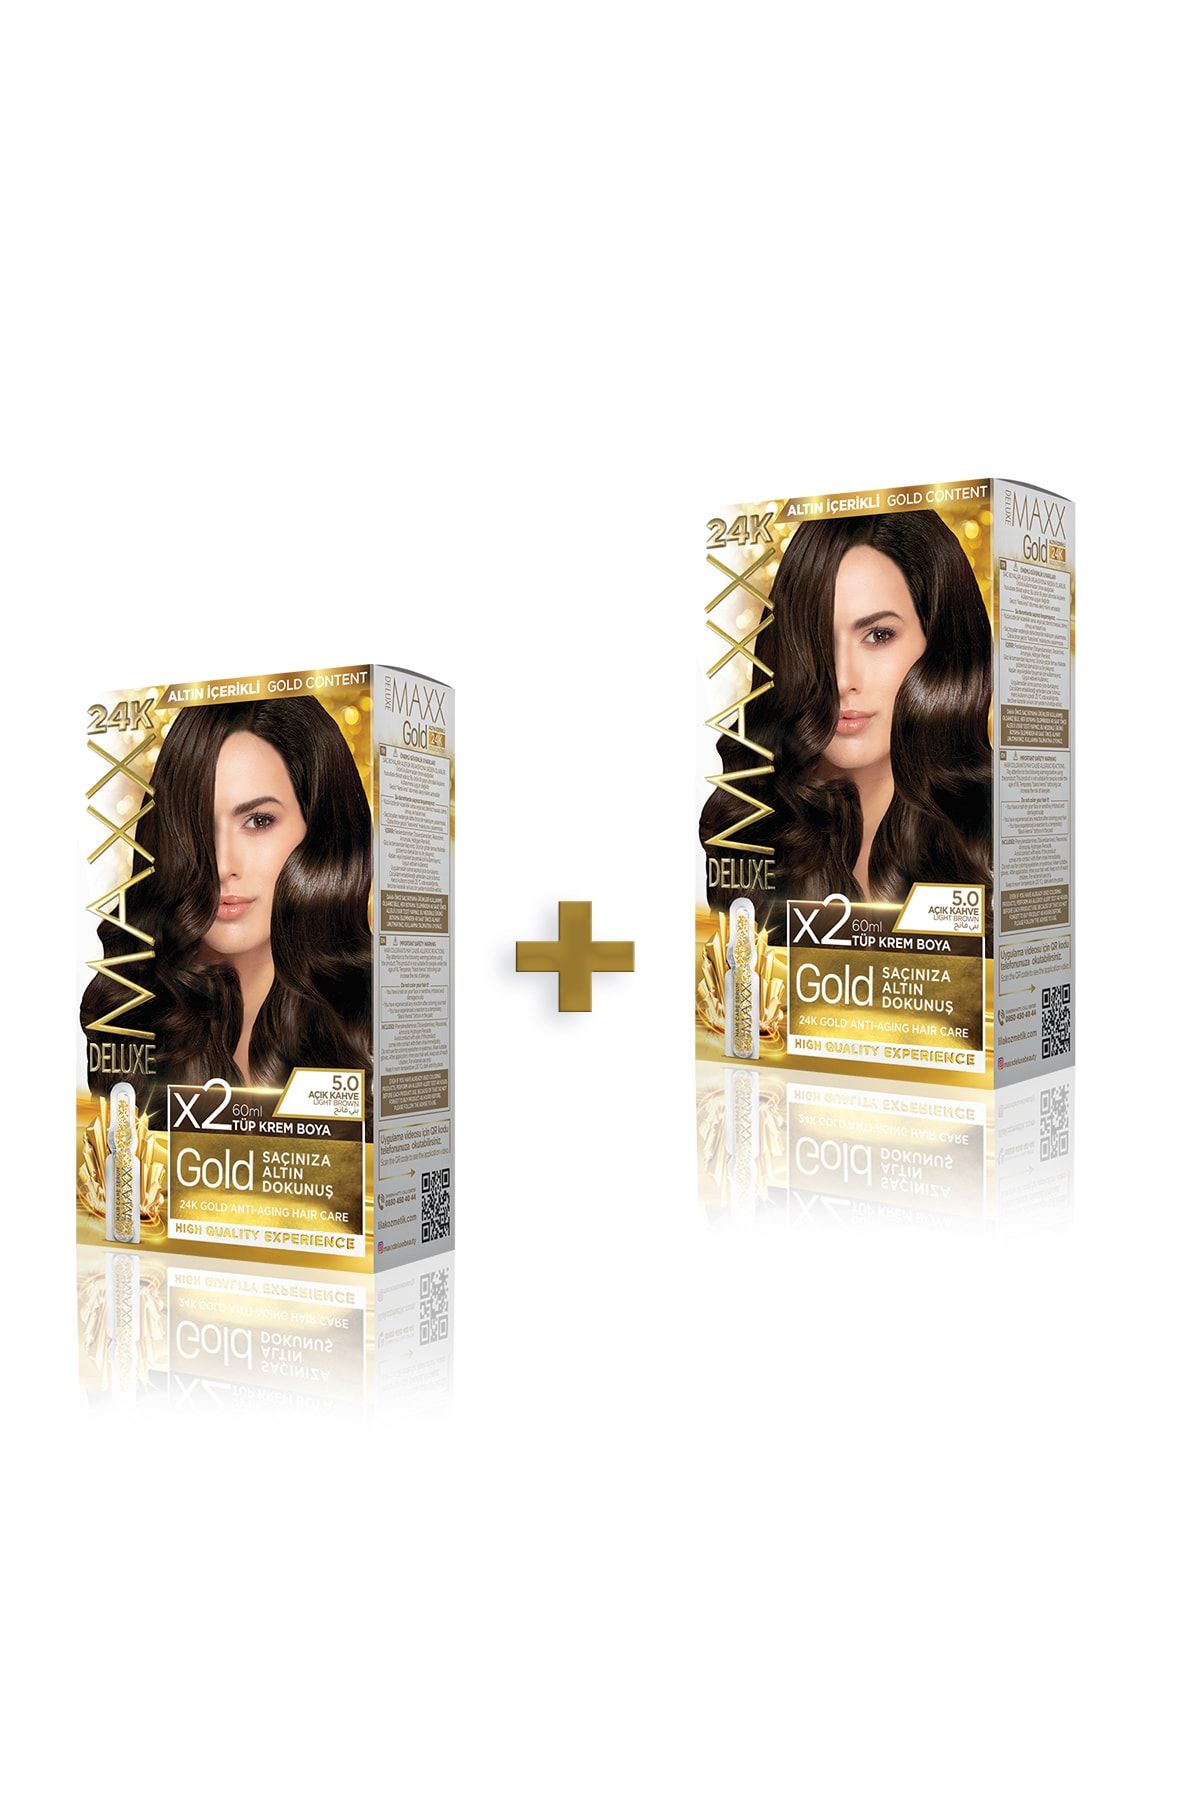 MAXX DELUXE Golden Beauty 5.0 Açık Kahve Set Boya